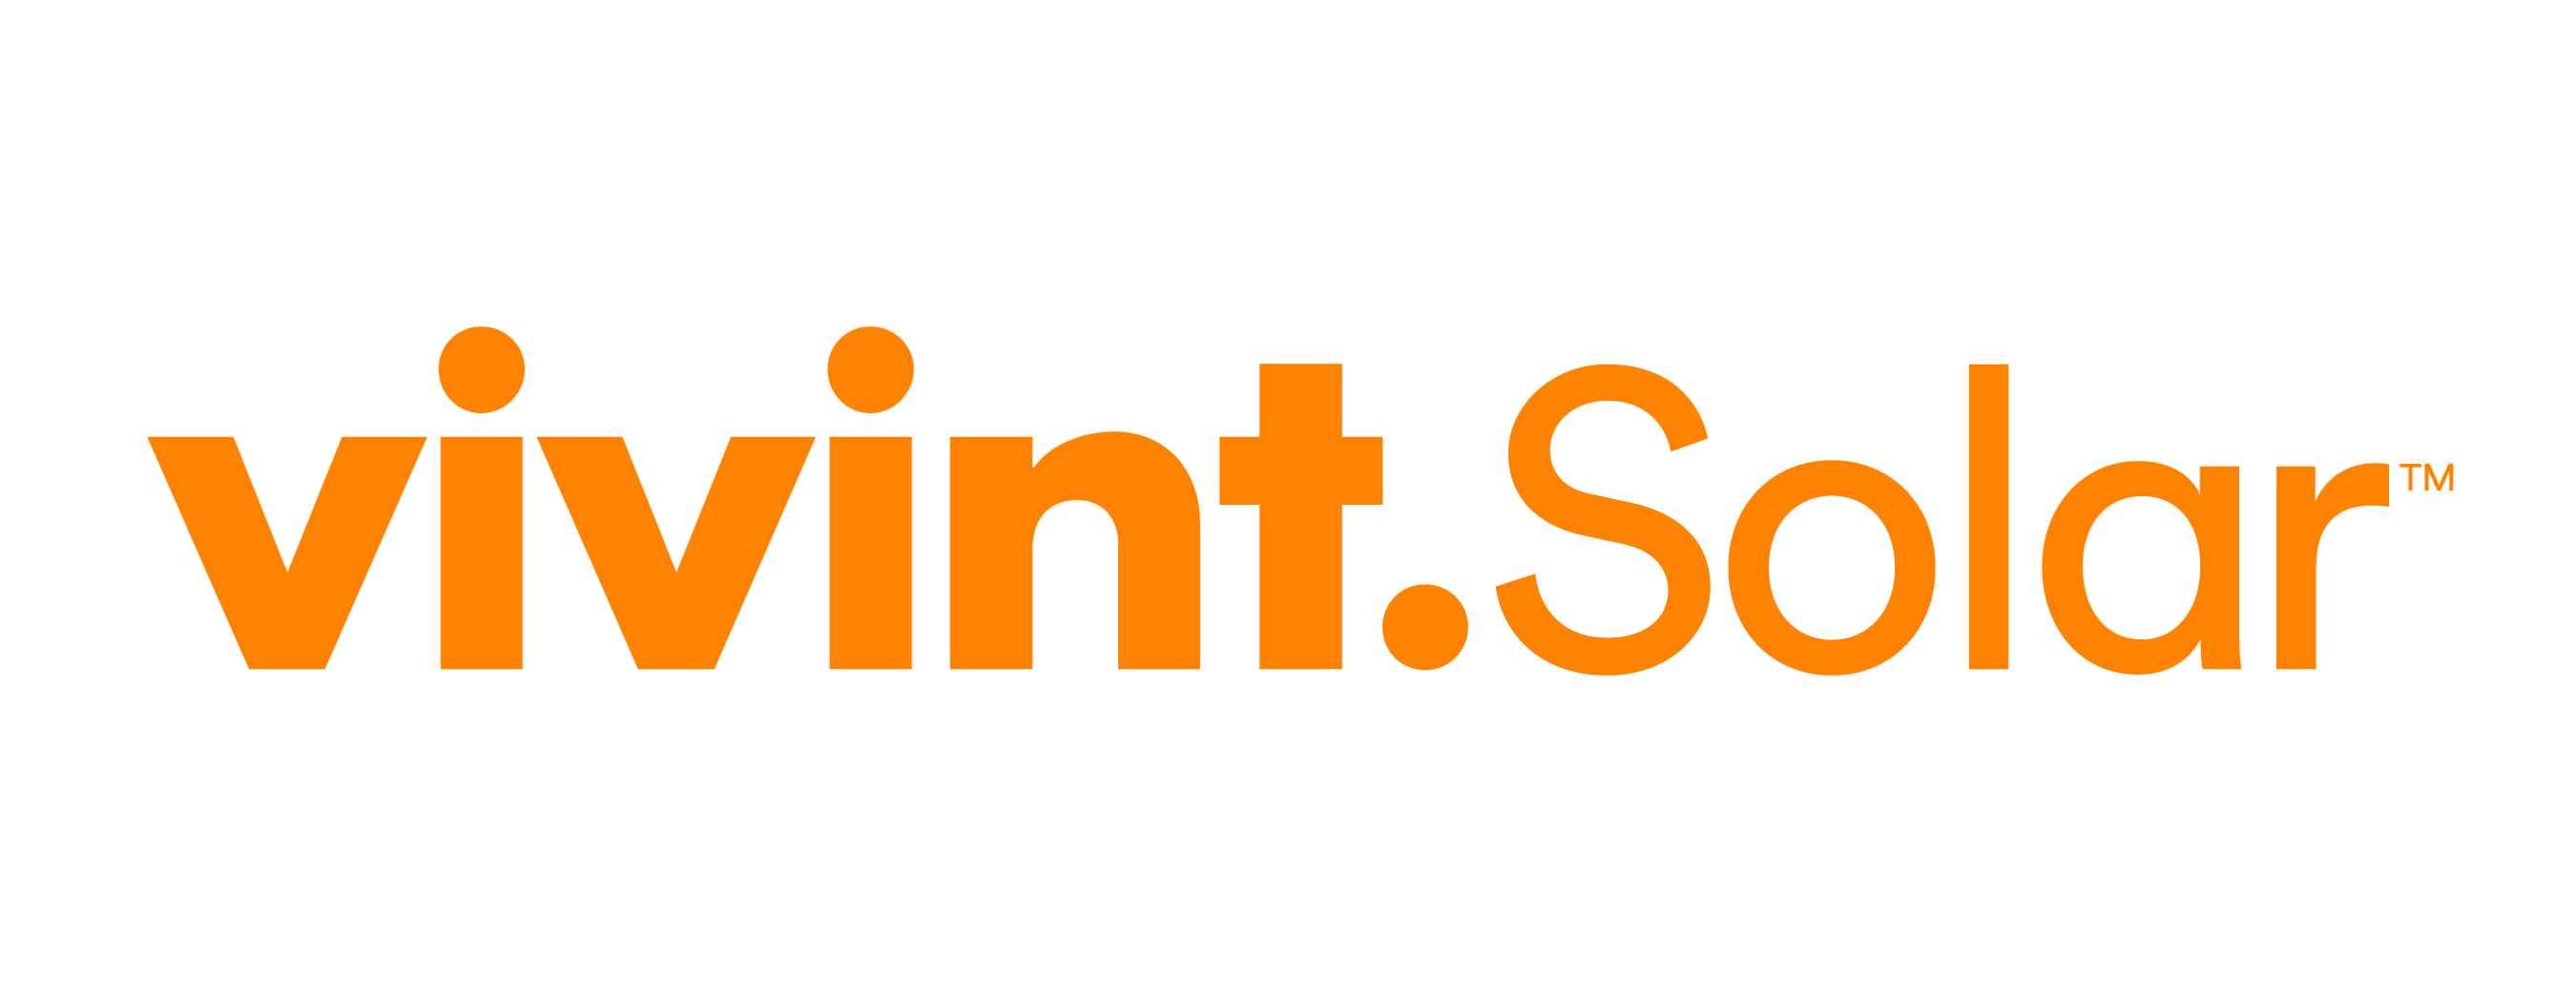 Solar Logo - Vivint Solar Assets, Picture, Videos